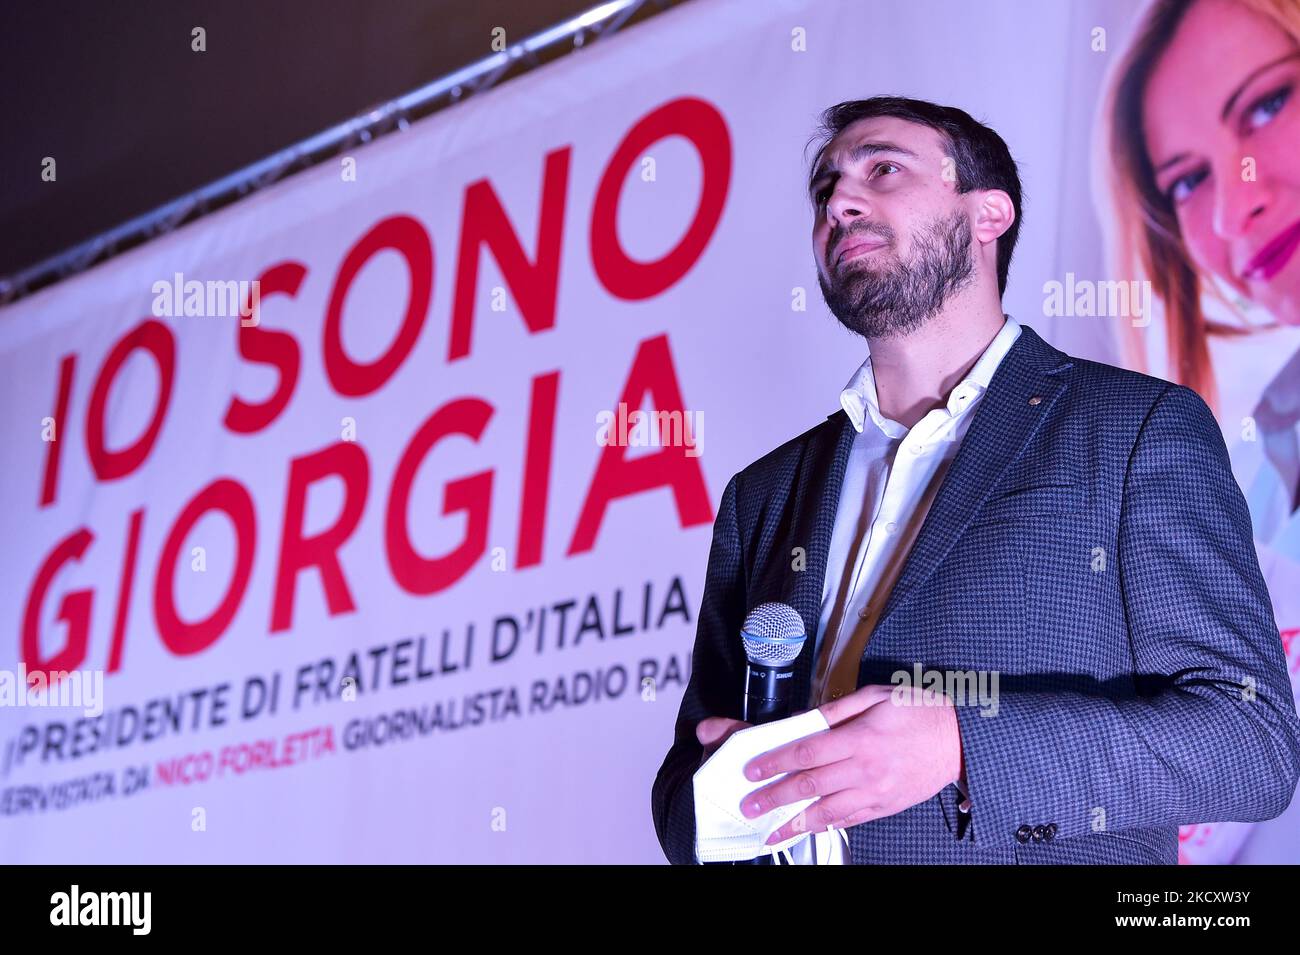 The leader of Fratelli d'Italia, Giorgia Meloni presents her book "Io sono Giorgia" in Rieti. launches the candidacy of Daniele Sinibaldi for the Rieti 2022 municipal elections the Centre-Right.